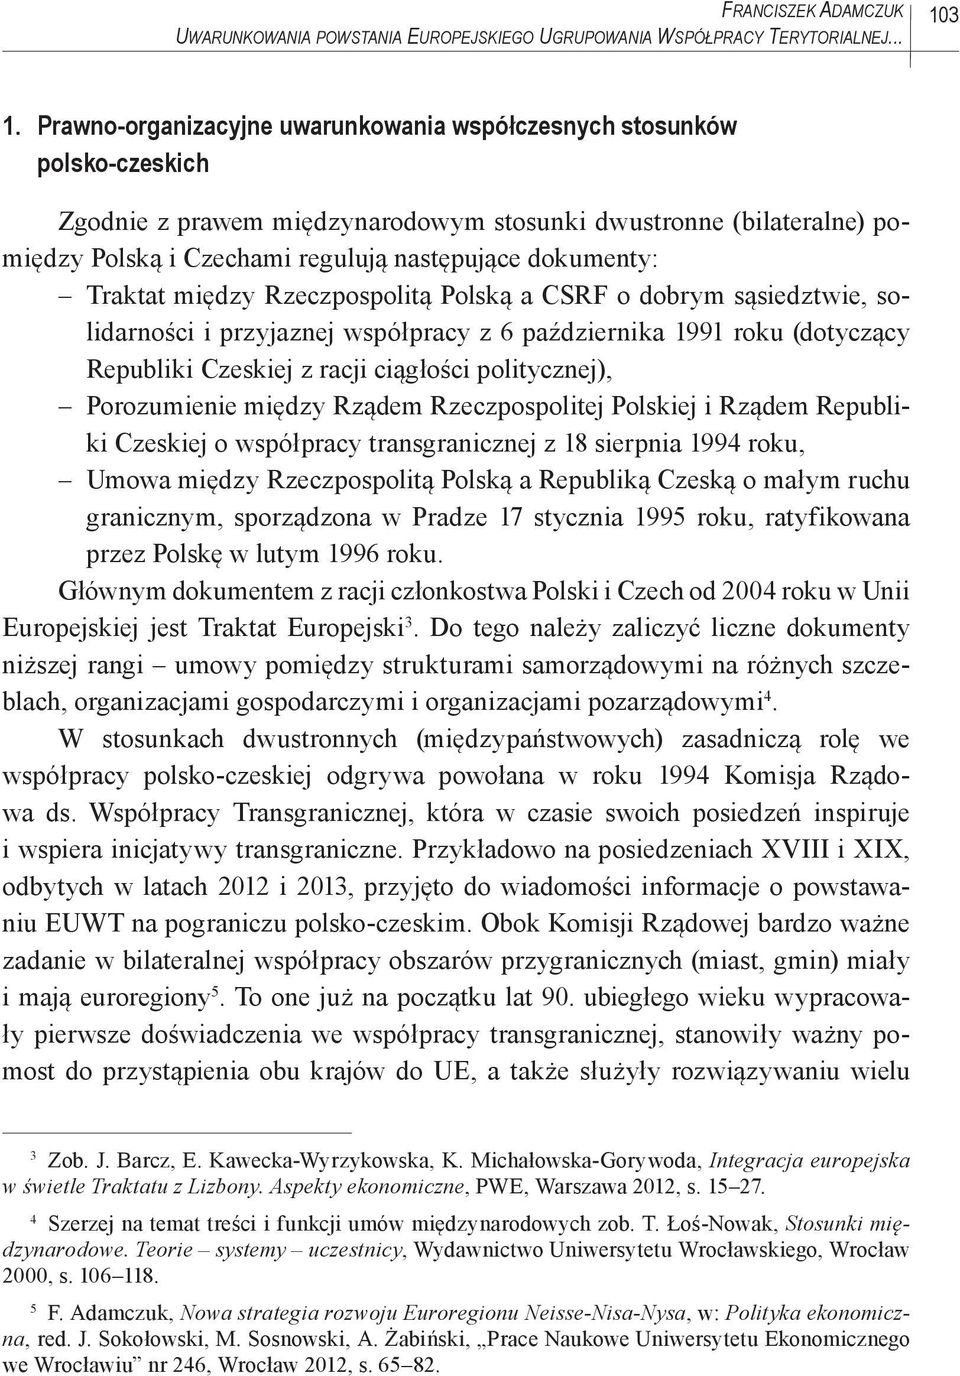 dokumenty: Traktat między Rzeczpospolitą Polską a CSRF o dobrym sąsiedztwie, solidarności i przyjaznej współpracy z 6 października 1991 roku (dotyczący Republiki Czeskiej z racji ciągłości